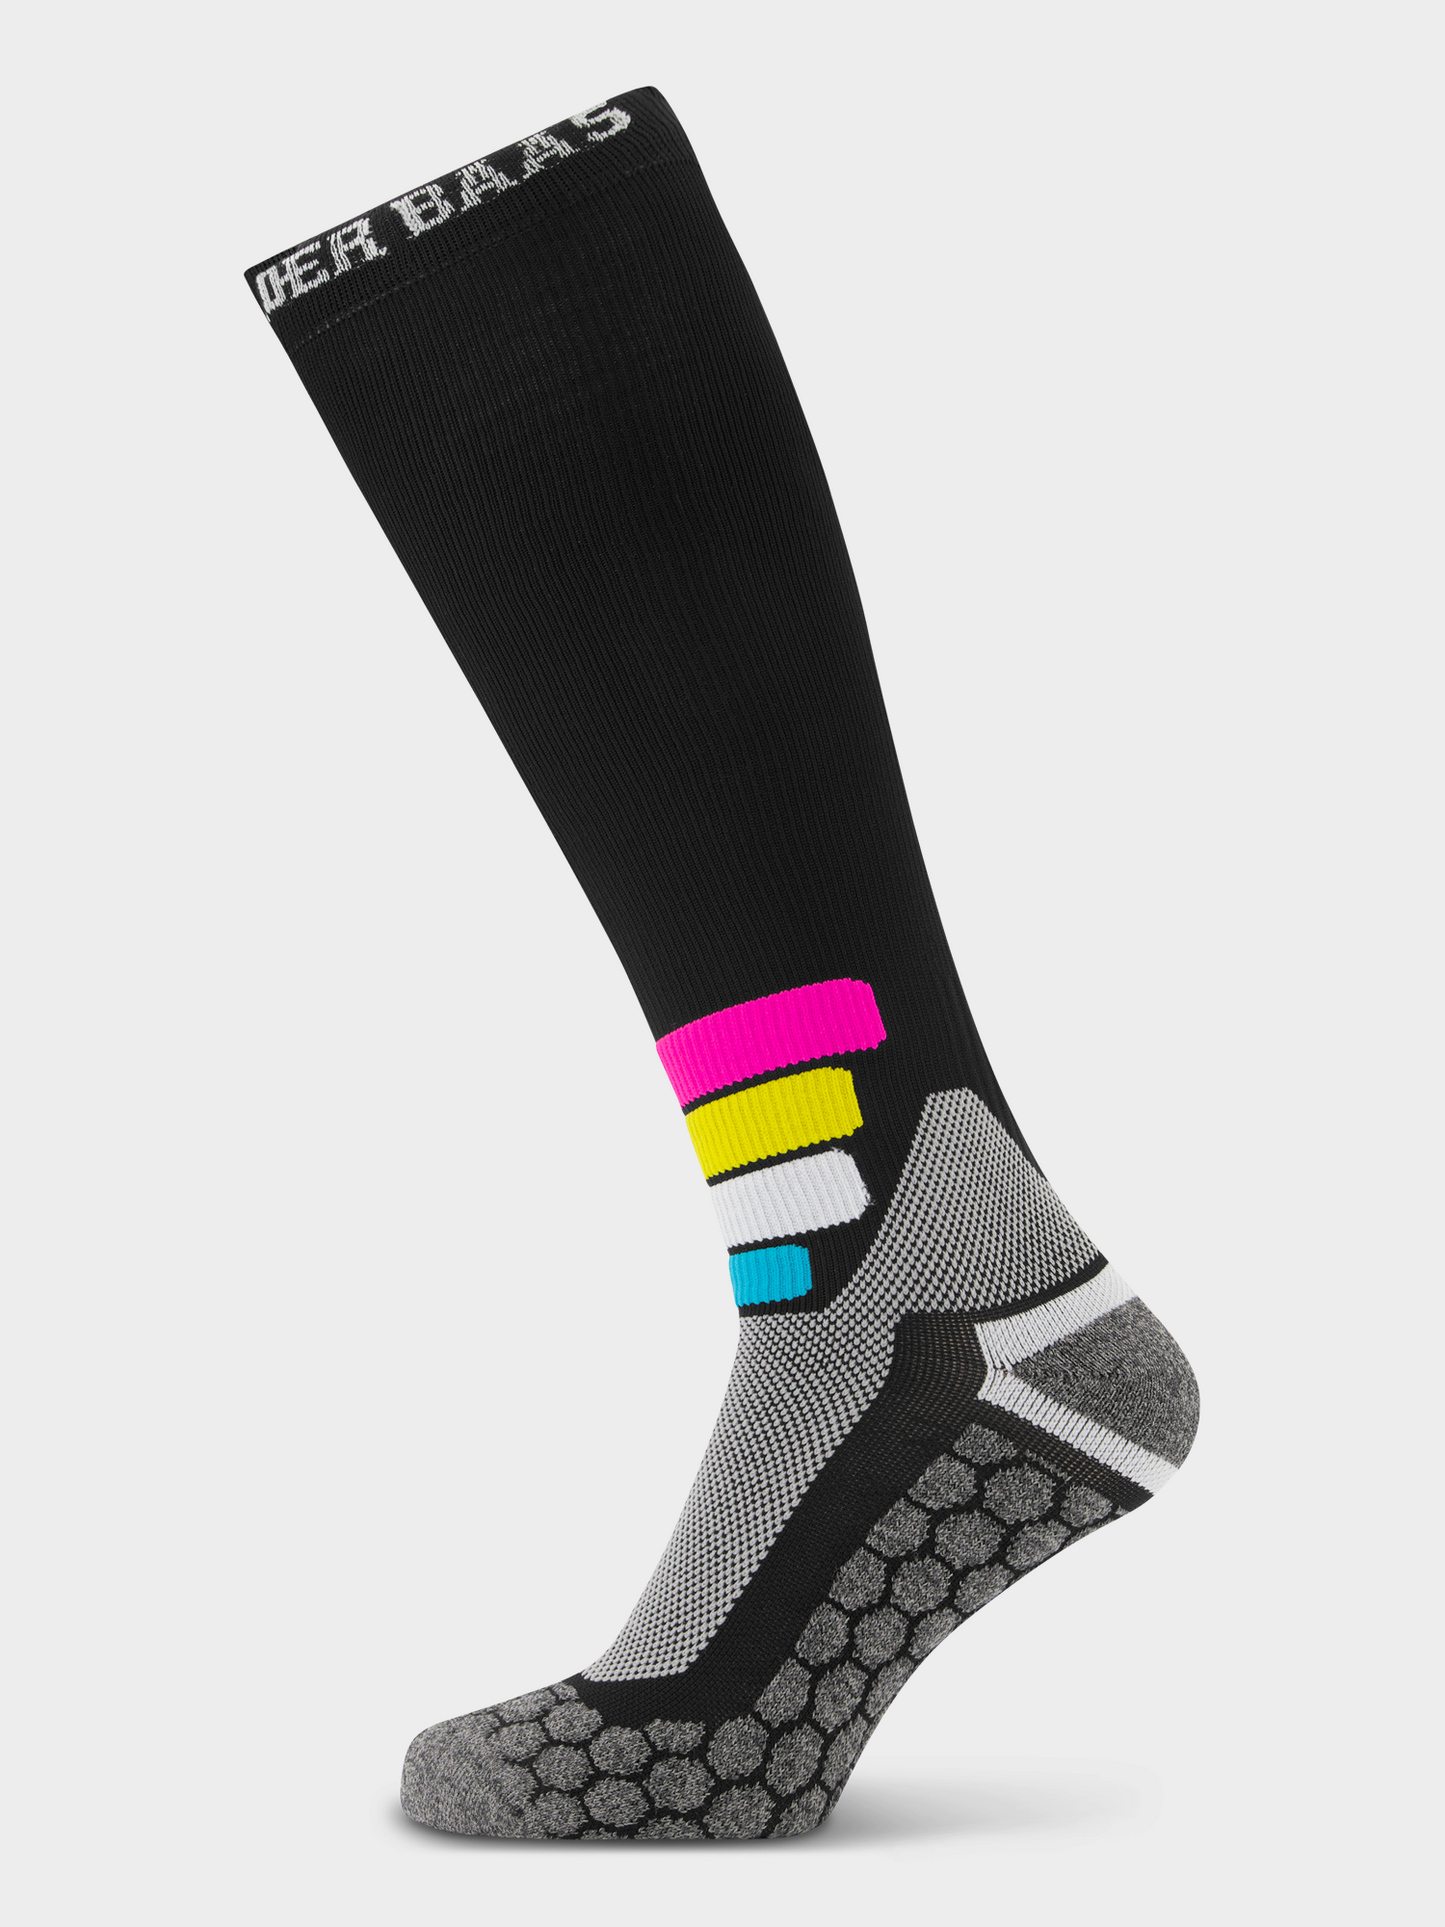 Poederbaas Tech Ski Socks Compress Merino Pro